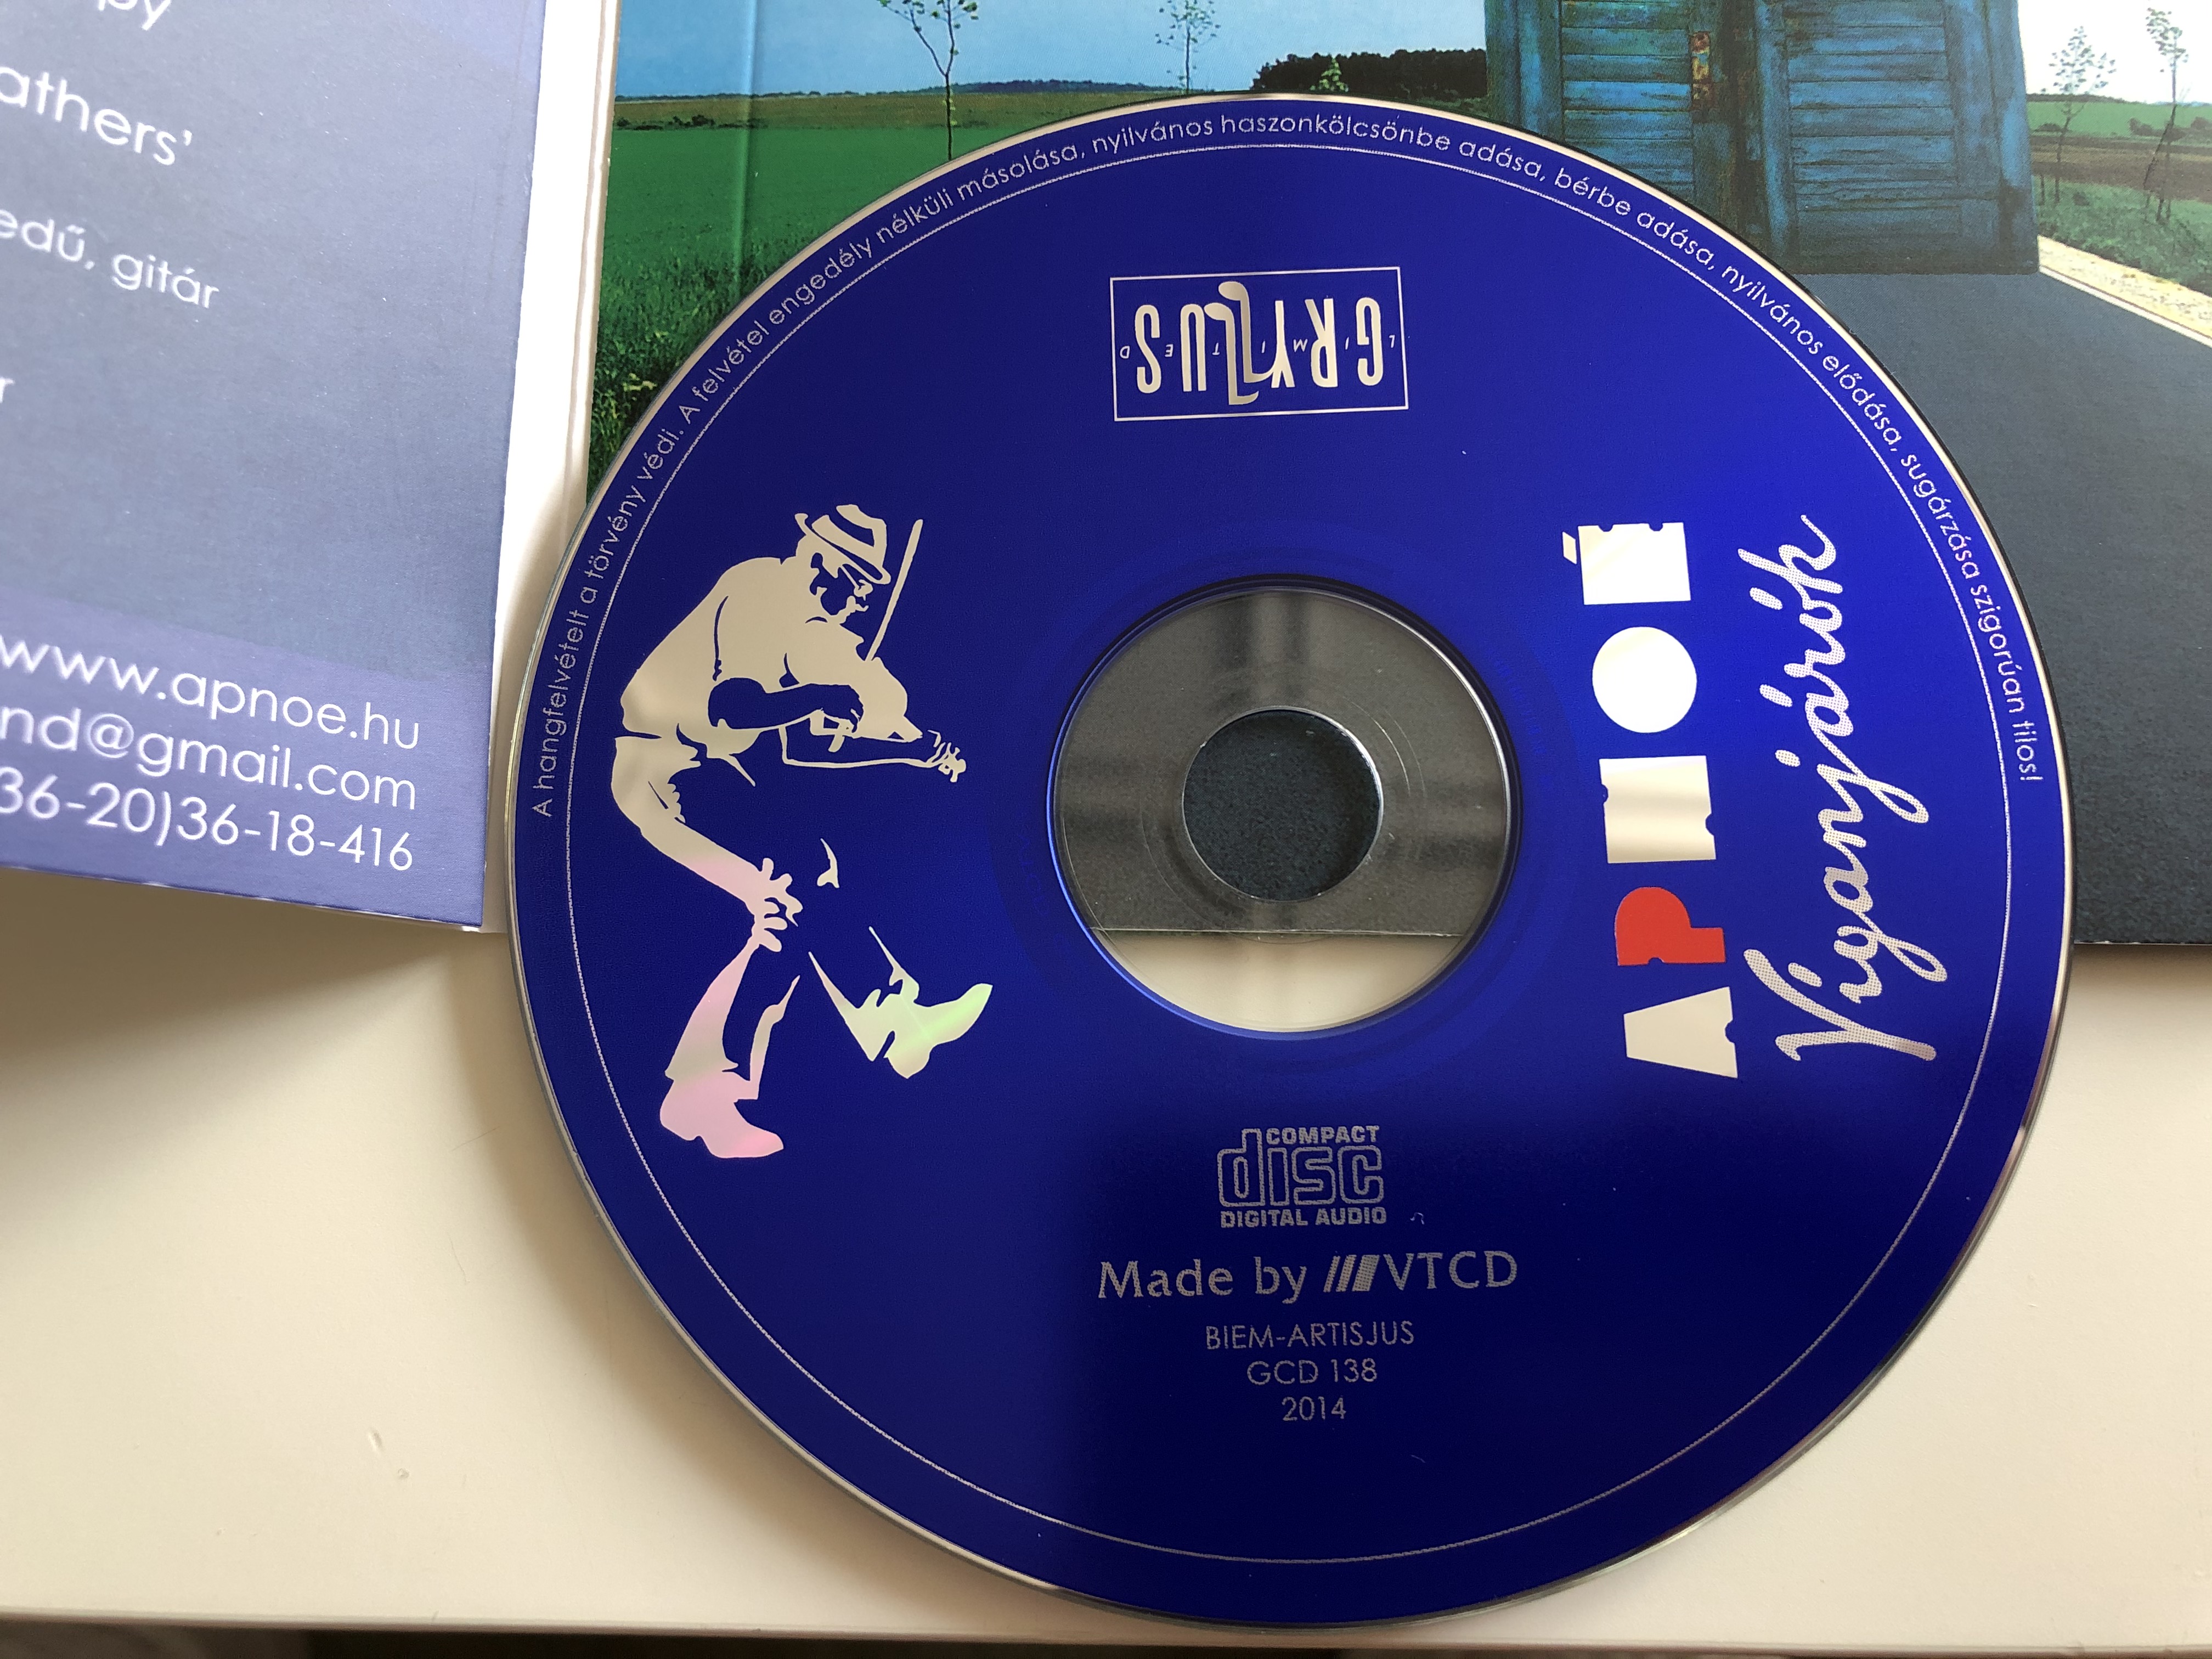 apnoe-viganjarok-gryllus-audio-cd-2014-gcd-138-3-.jpg